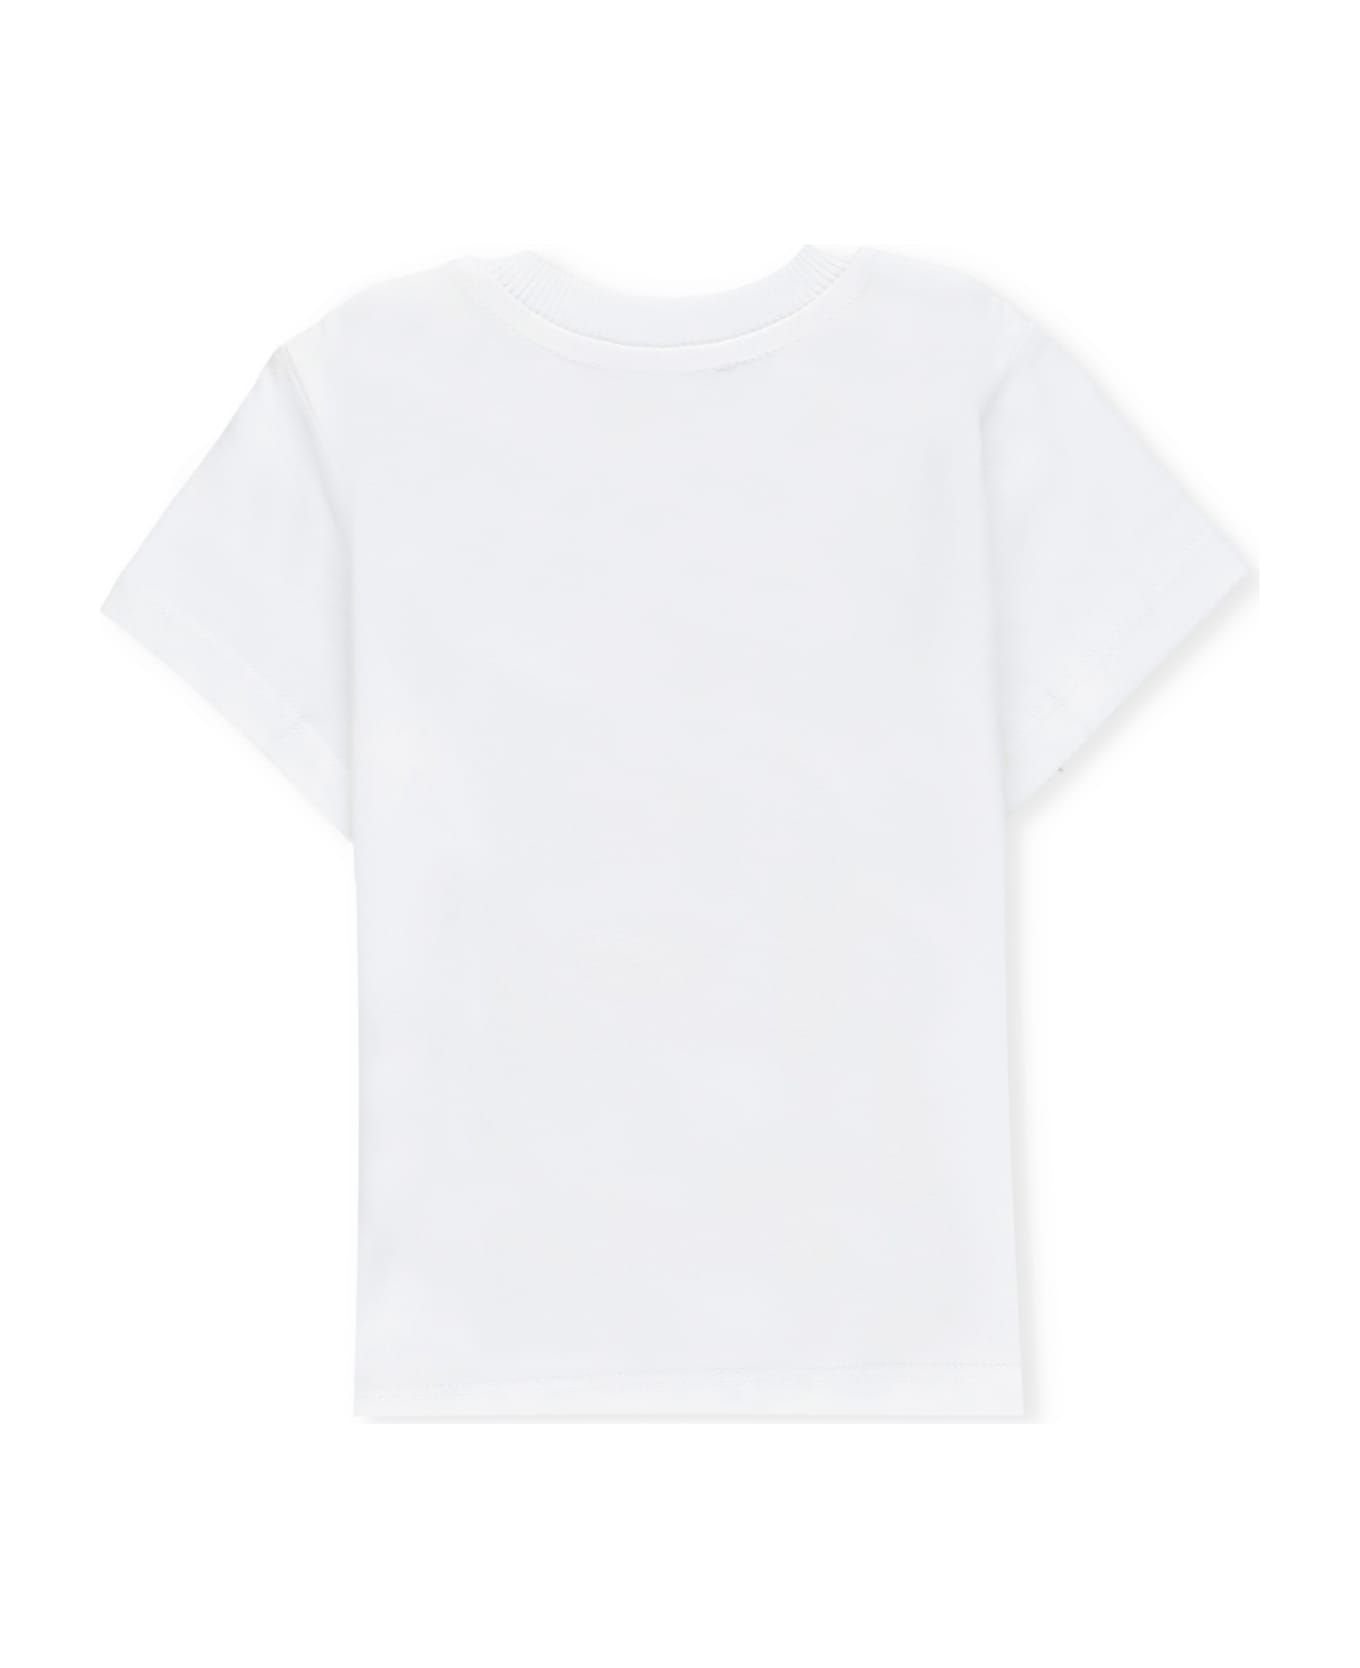 Moschino T-shirt With Print - White